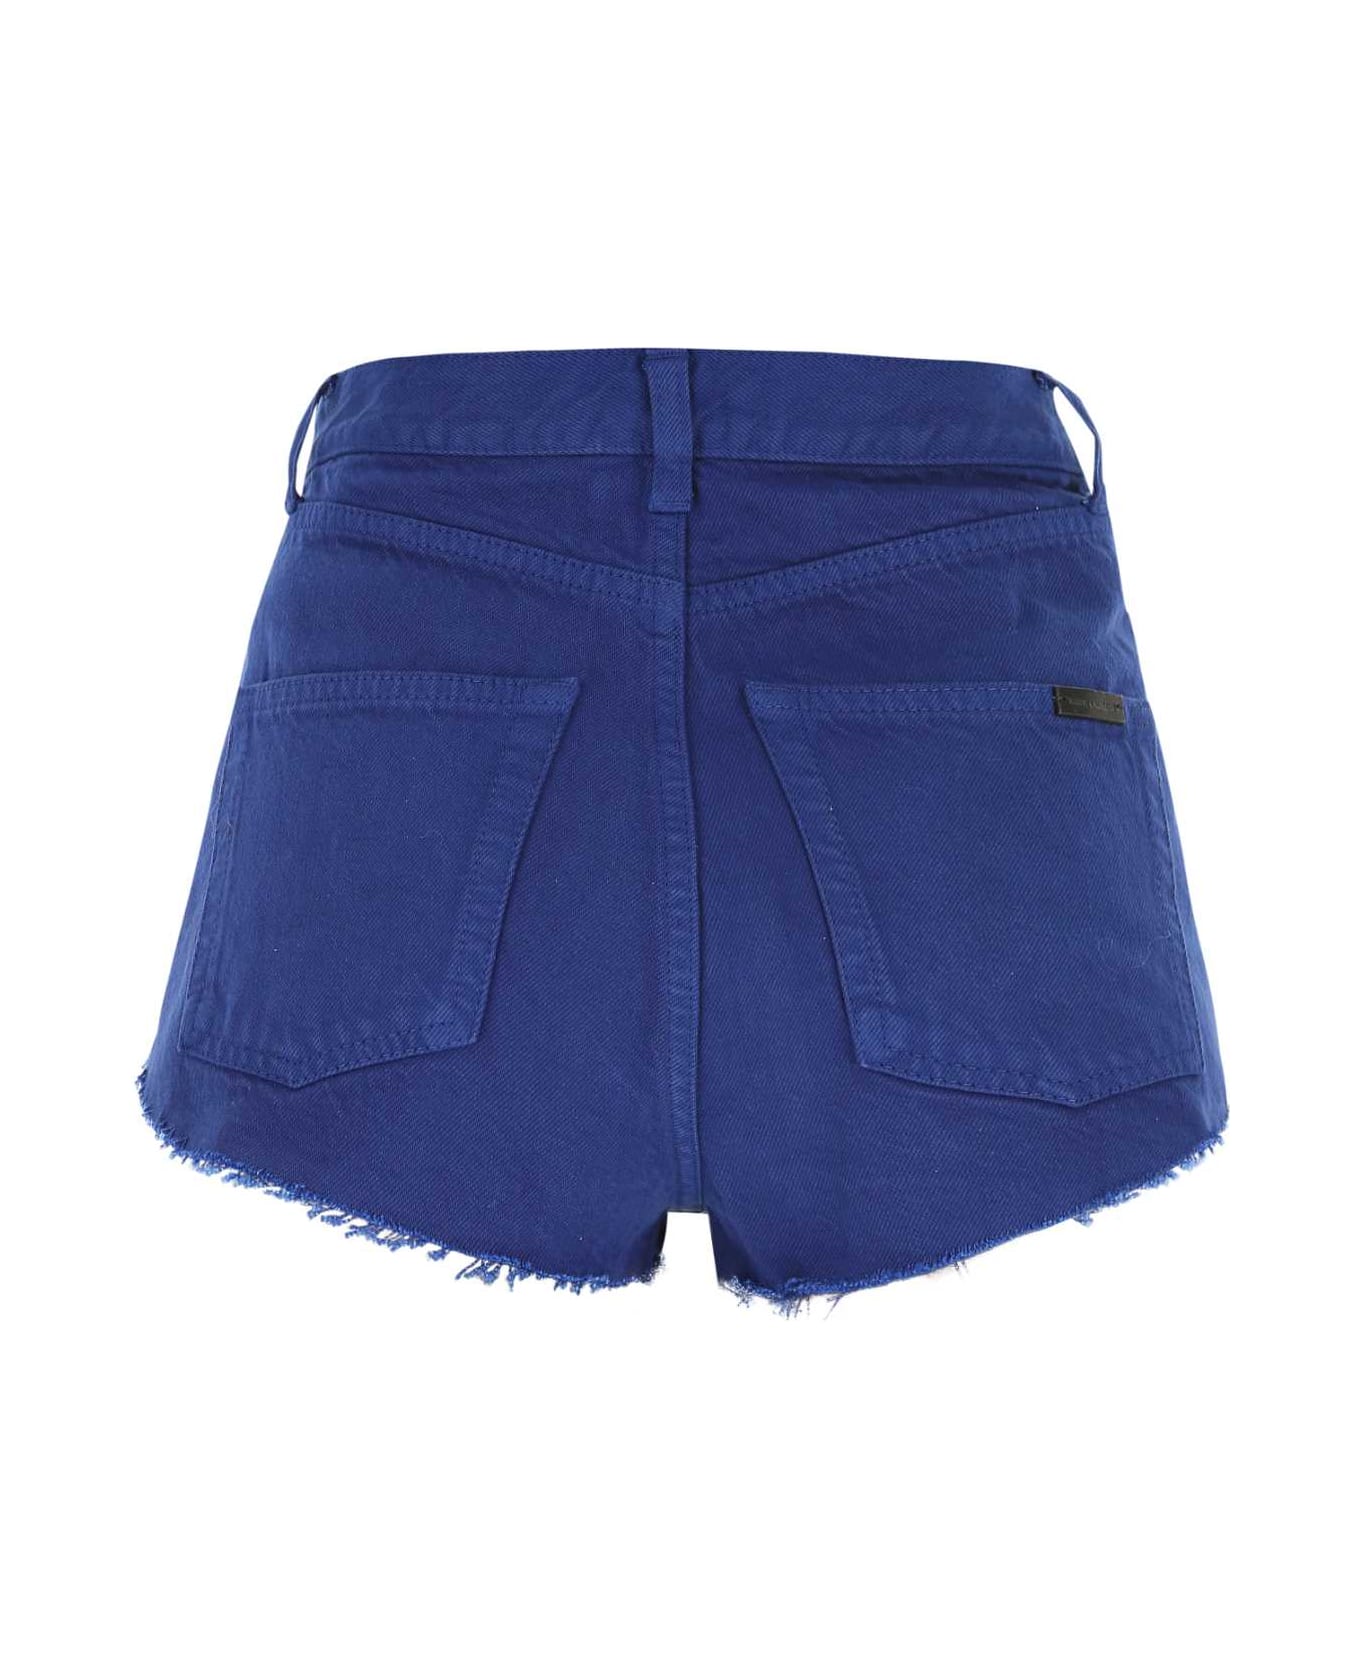 Saint Laurent Electric Blue Denim Shorts - 4949